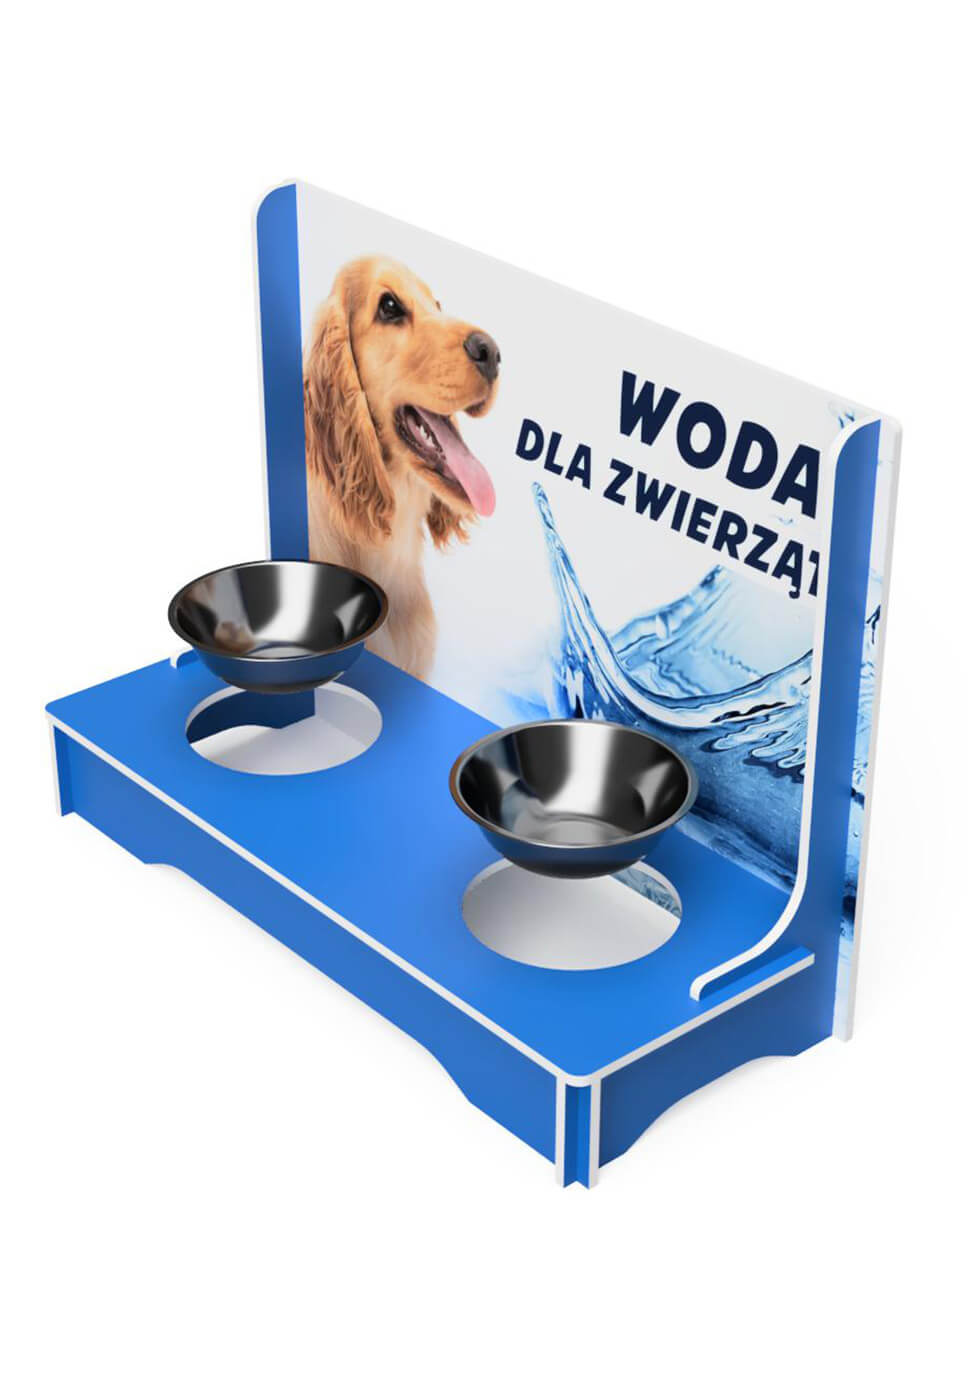 Stand für die Hundeschüssel mit Wasser - przykład 1465